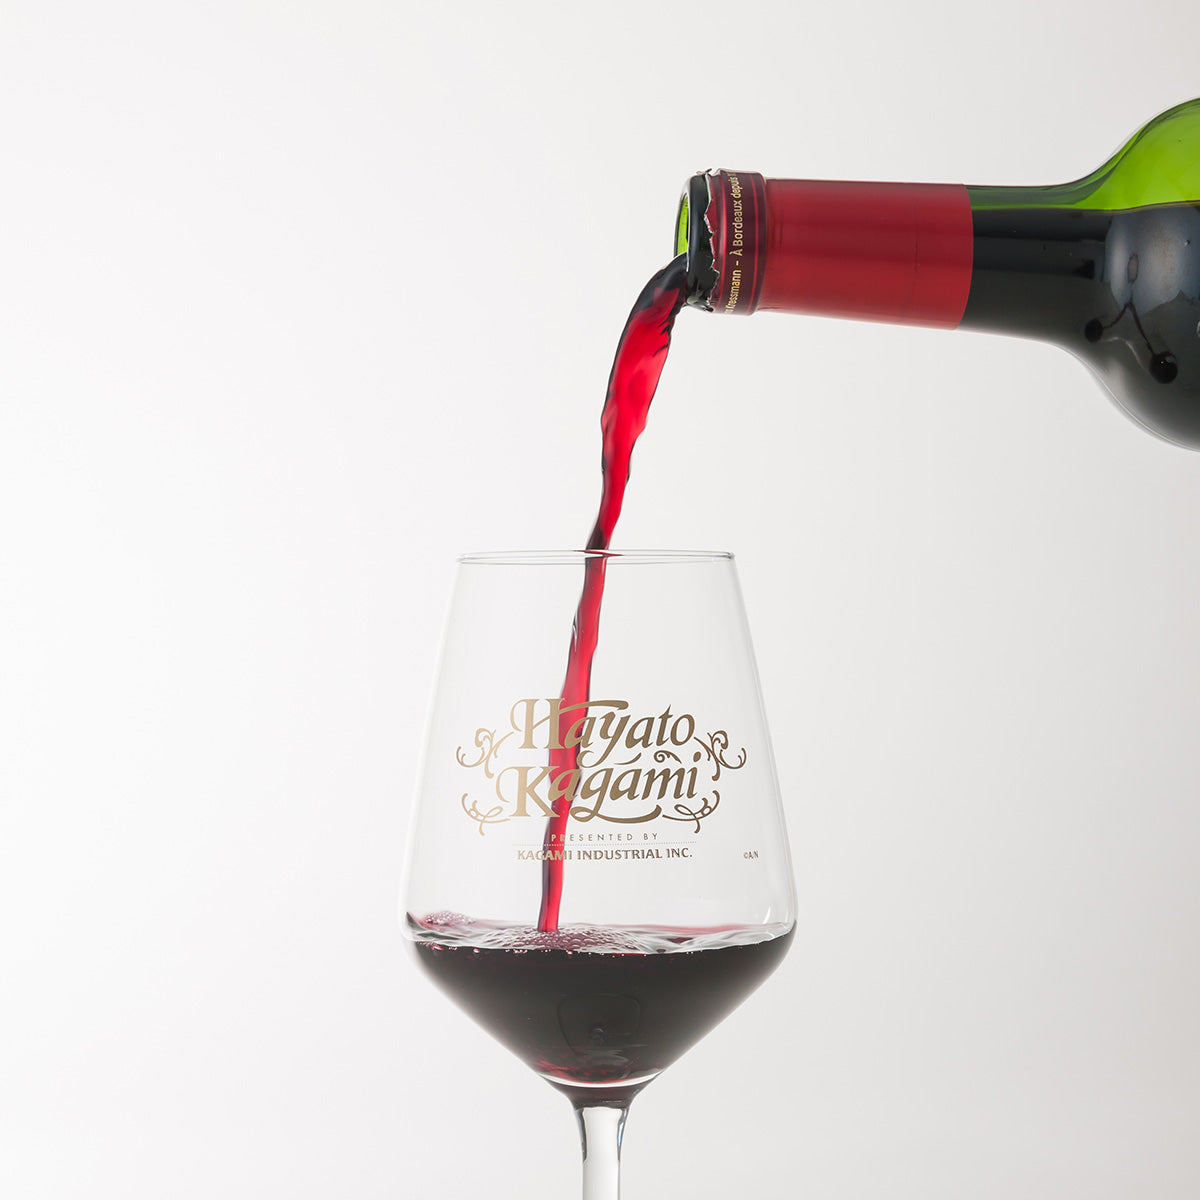 キャンセル再販分】加賀美ハヤト フランス産ボルドー赤白ロゼワインとオリジナルロゴ入りグラスセット 【SHINY銀】 – いろはにワイン